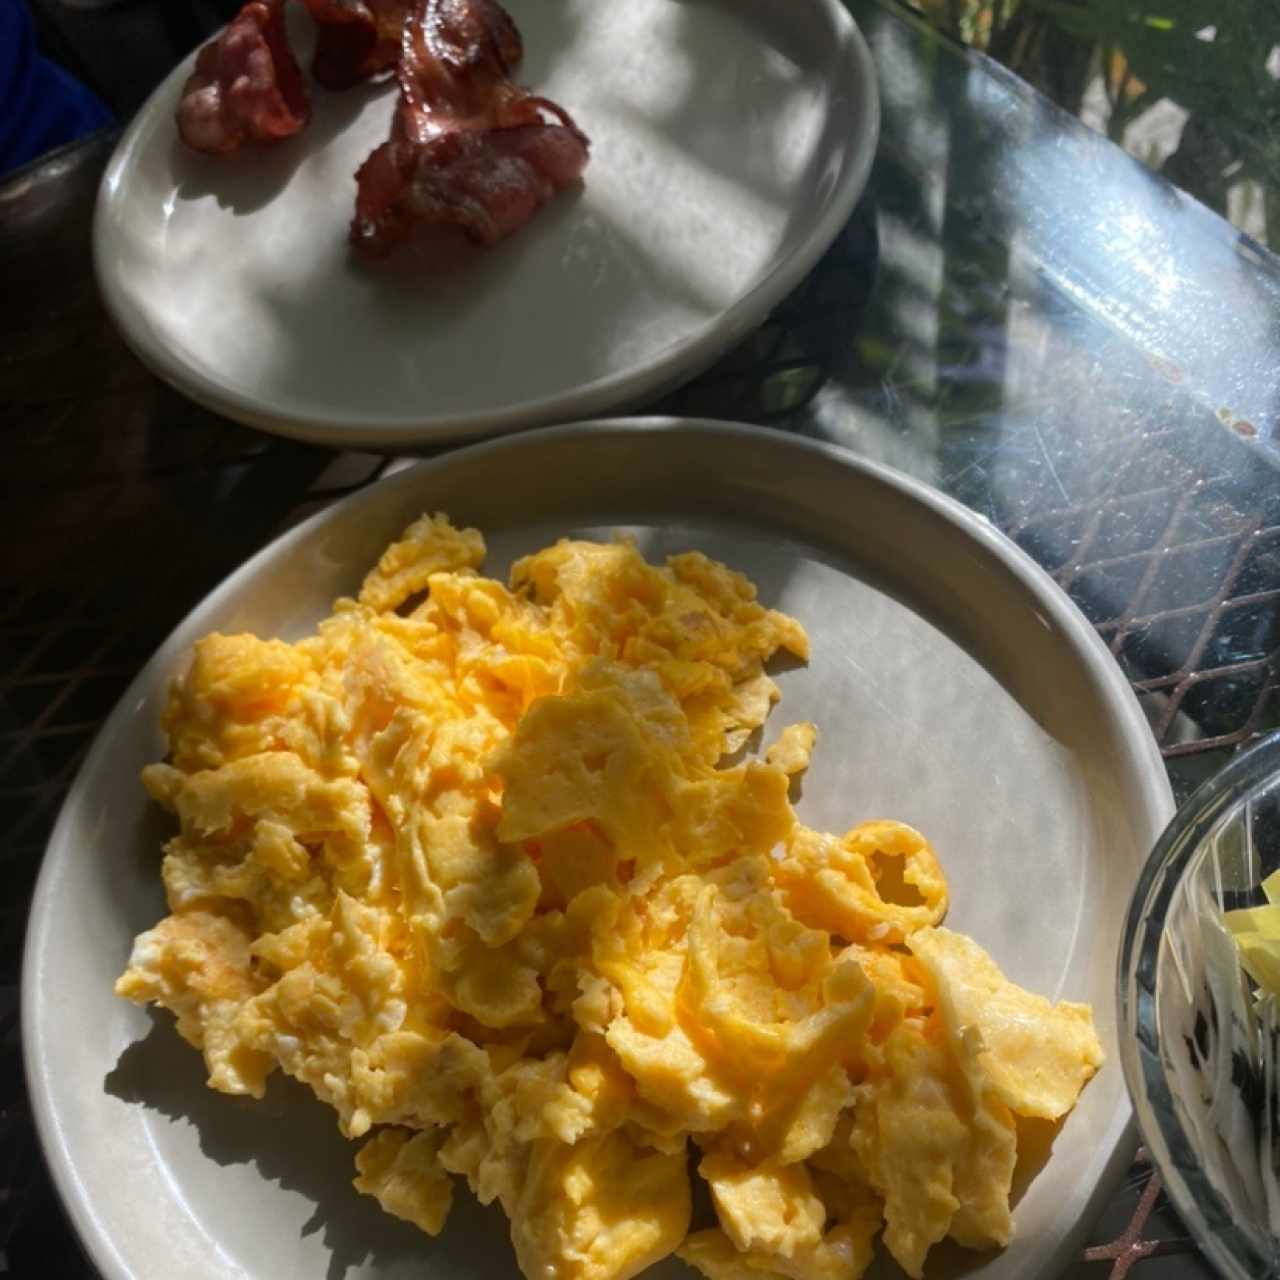 Acompañamiento para el desayuno: huevos y bacon 